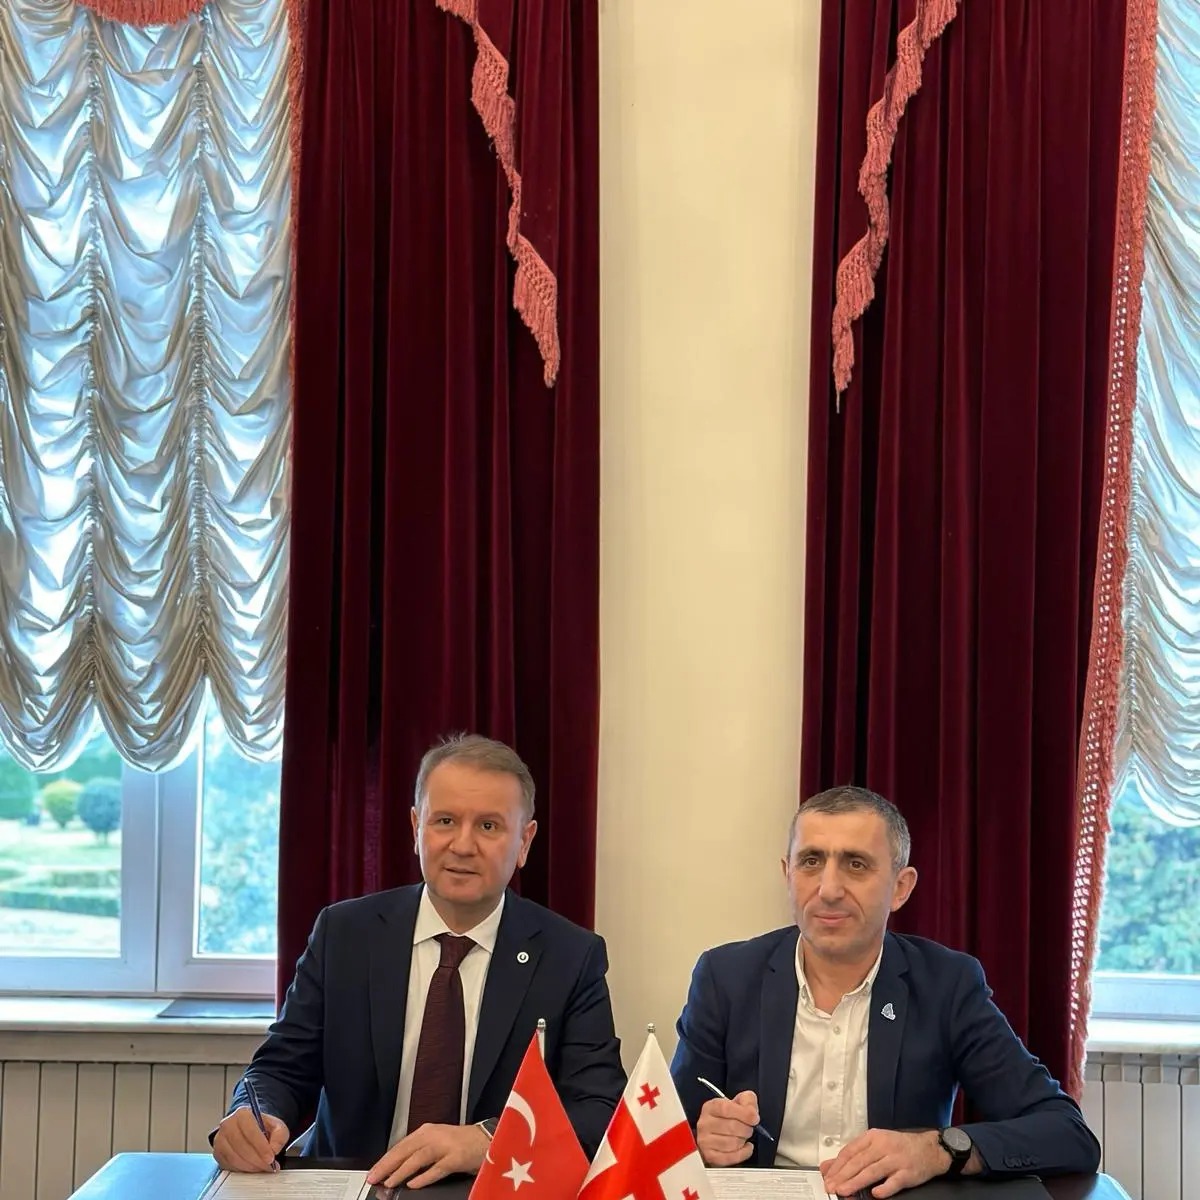 Ordu Üniversitesi, Batum Shota Rustaveli Devlet Üniversitesi ile öğrenci ve akademik değişimine yönelik iş birliği protokolü imzaladı.